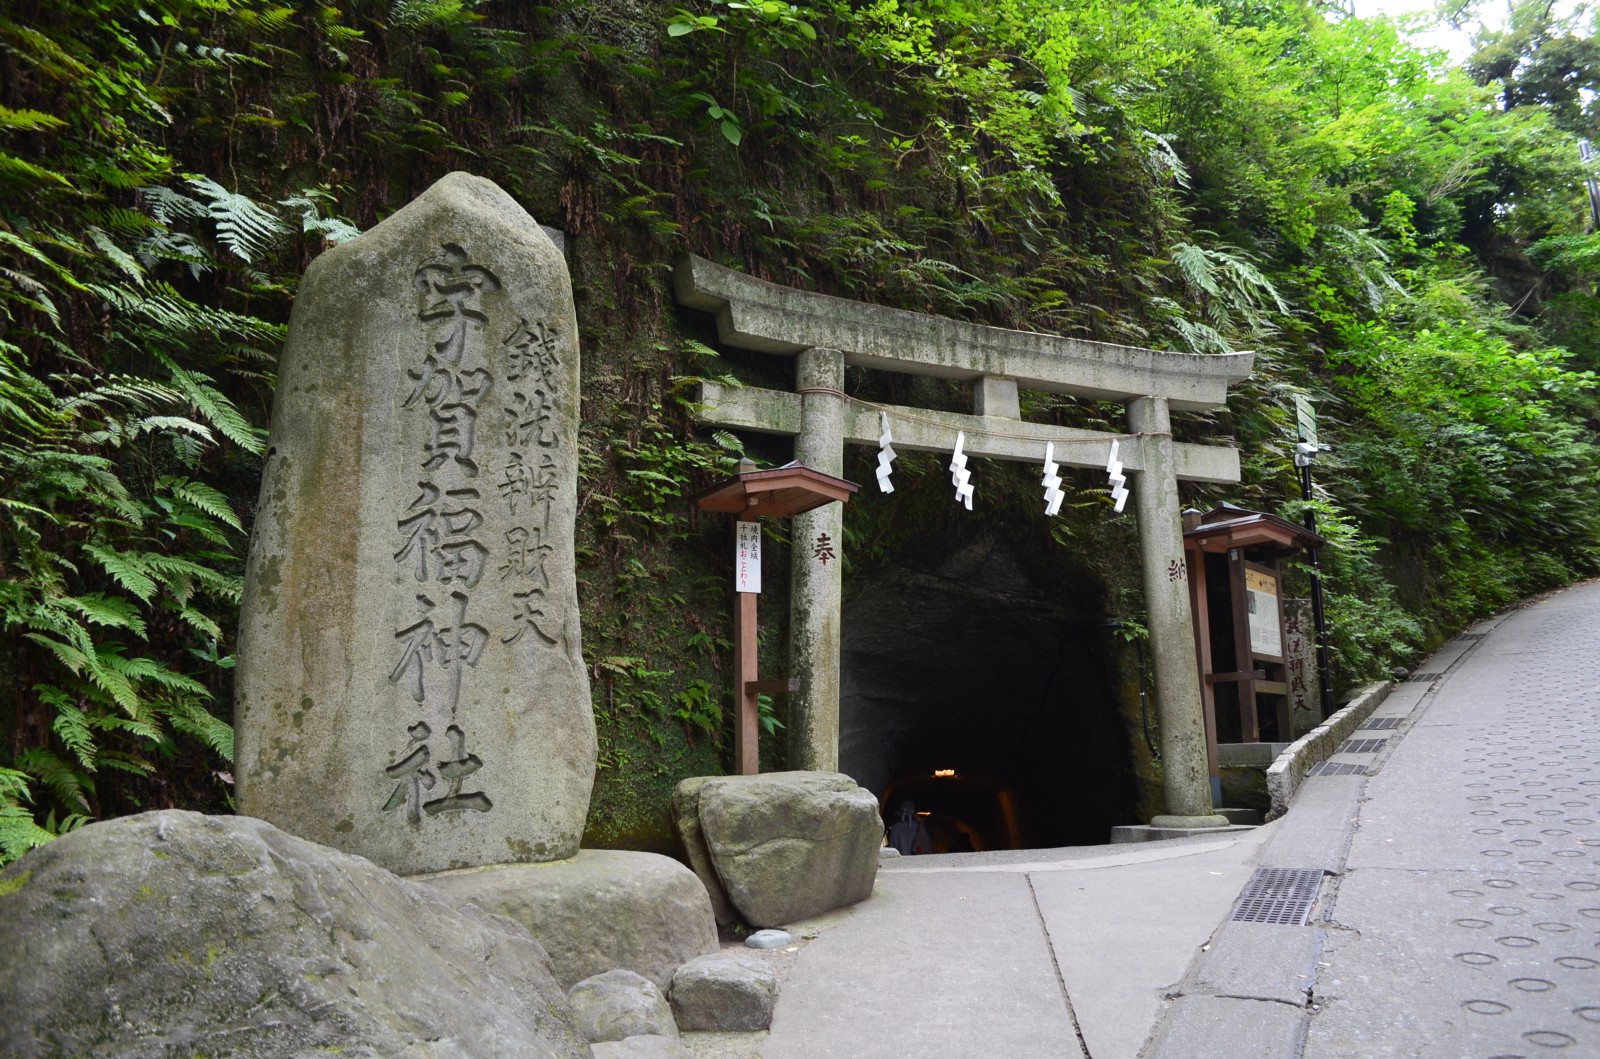 The entrance to Zeniarai Benten Shrine